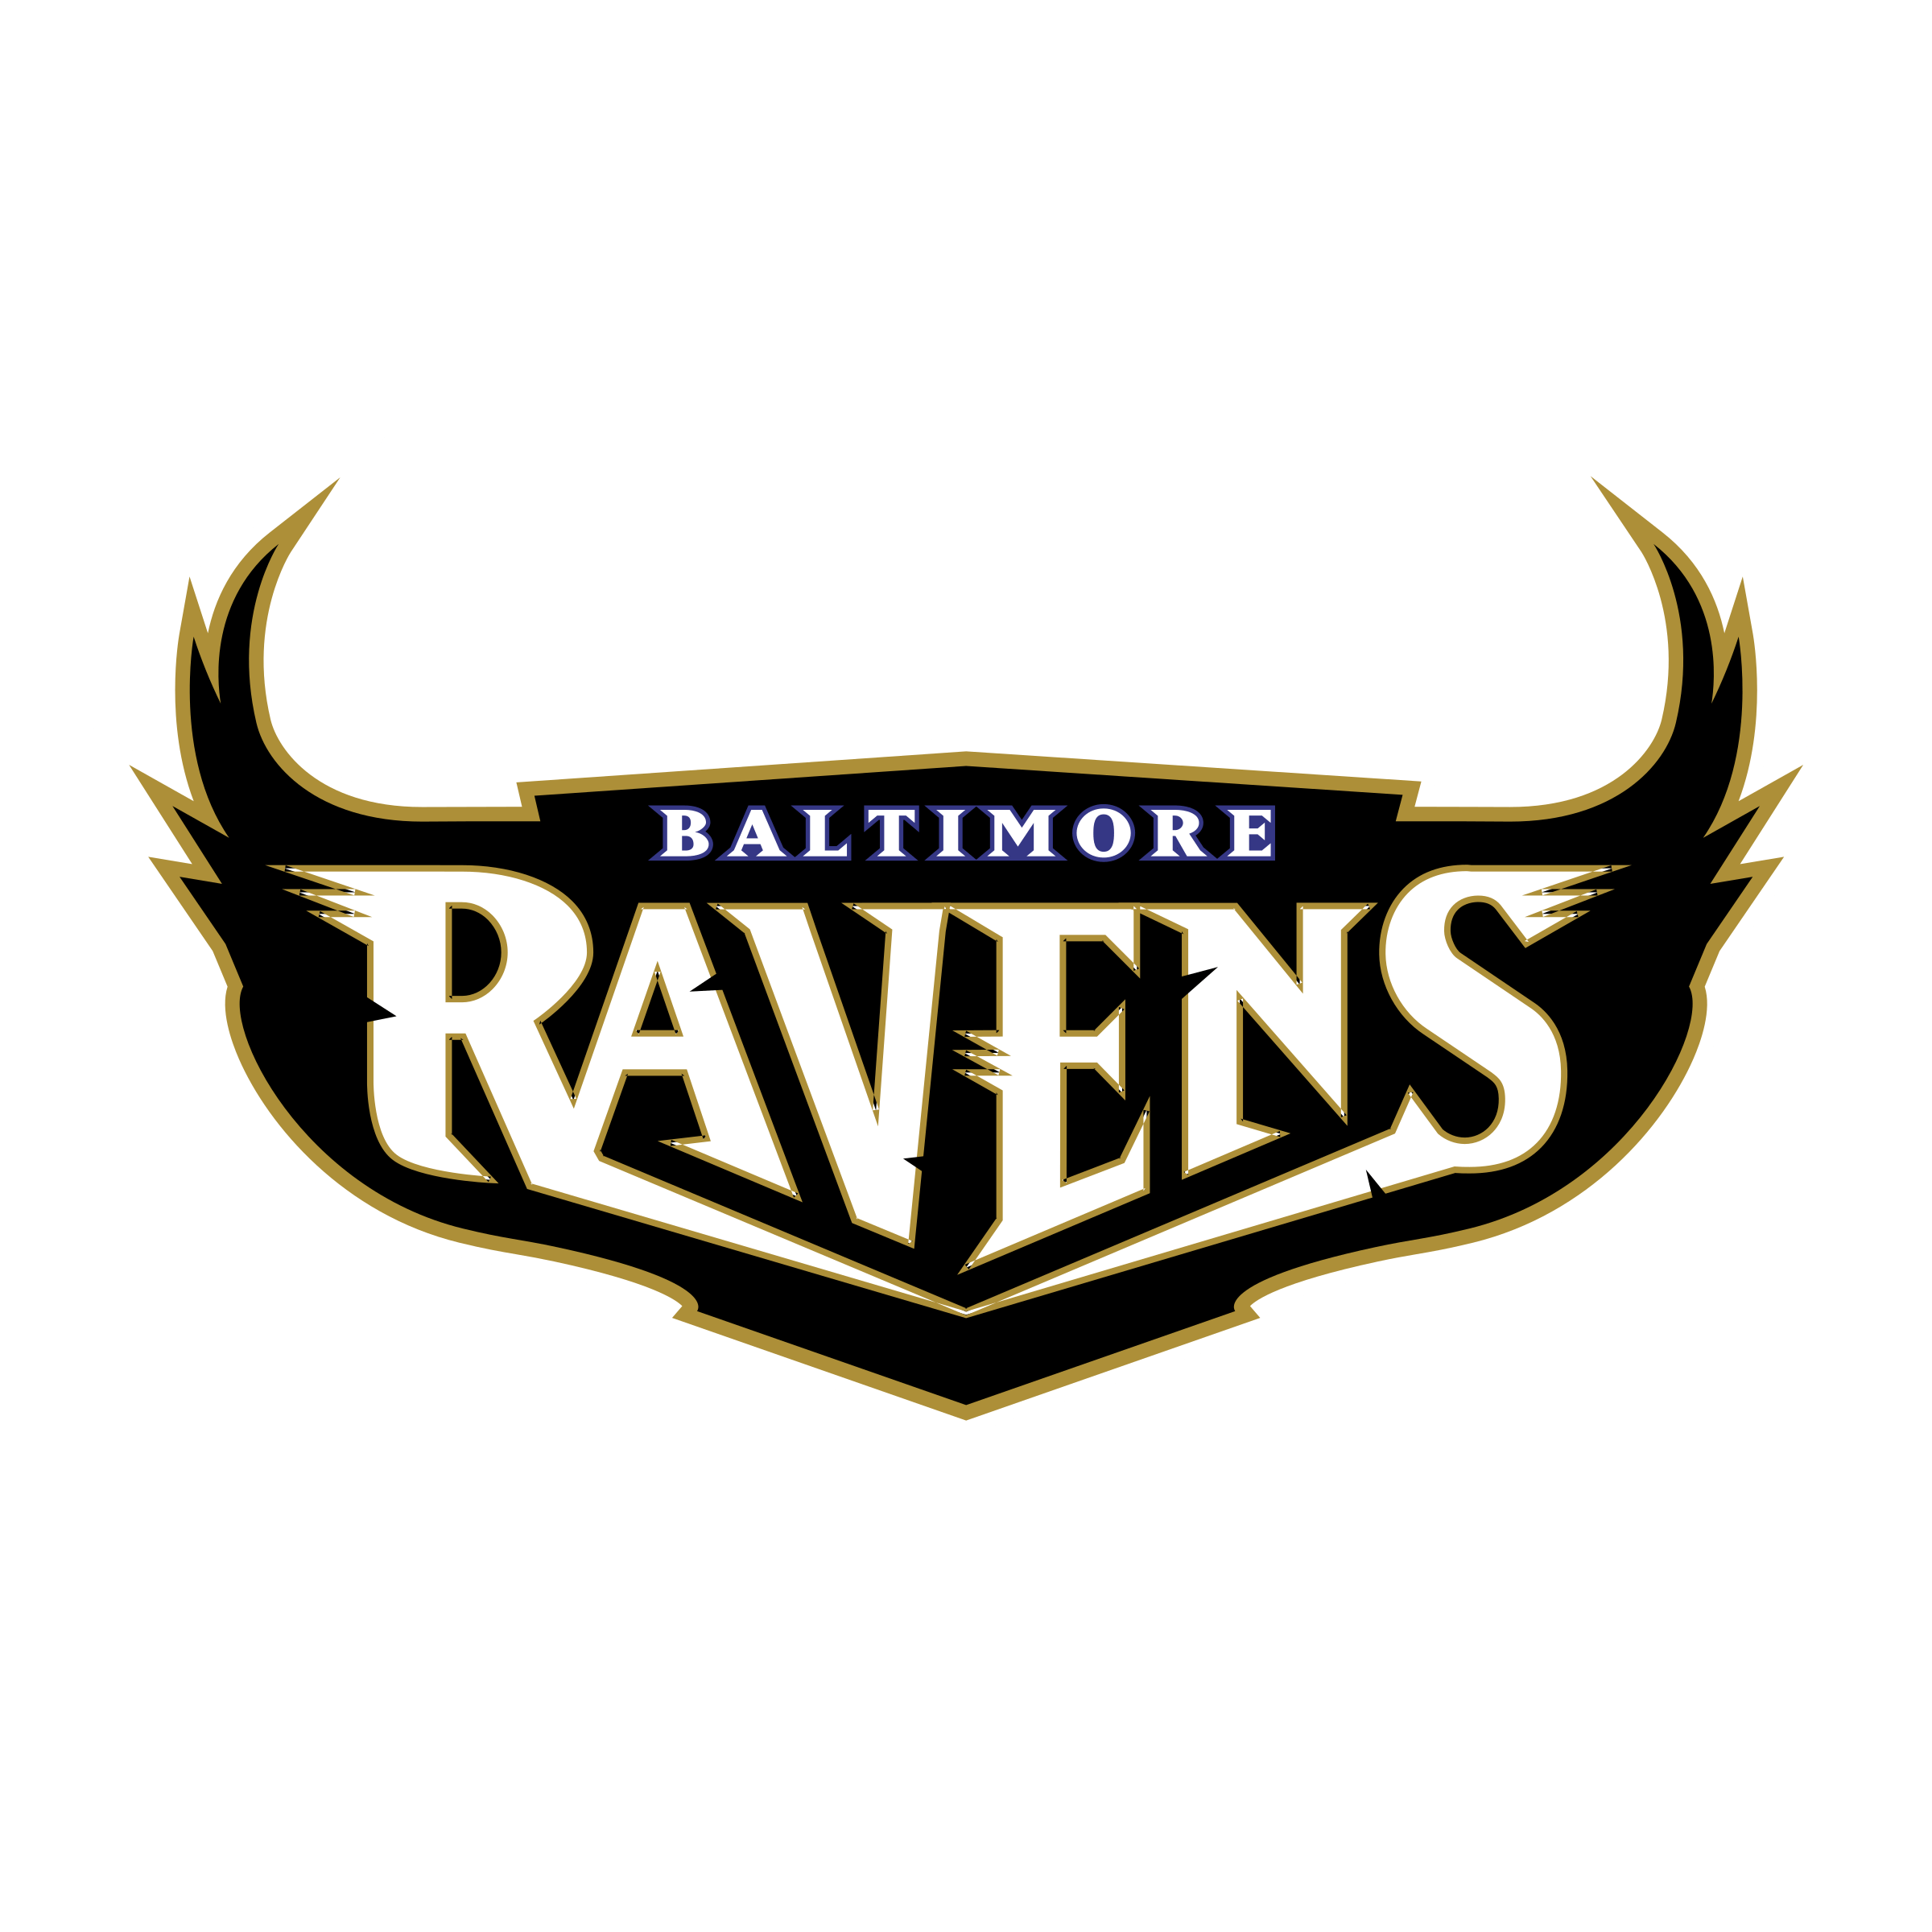 Baltimore Ravens Logo - Baltimore Ravens 02 Logo SVG Vector & PNG Transparent - Vector Logo ...